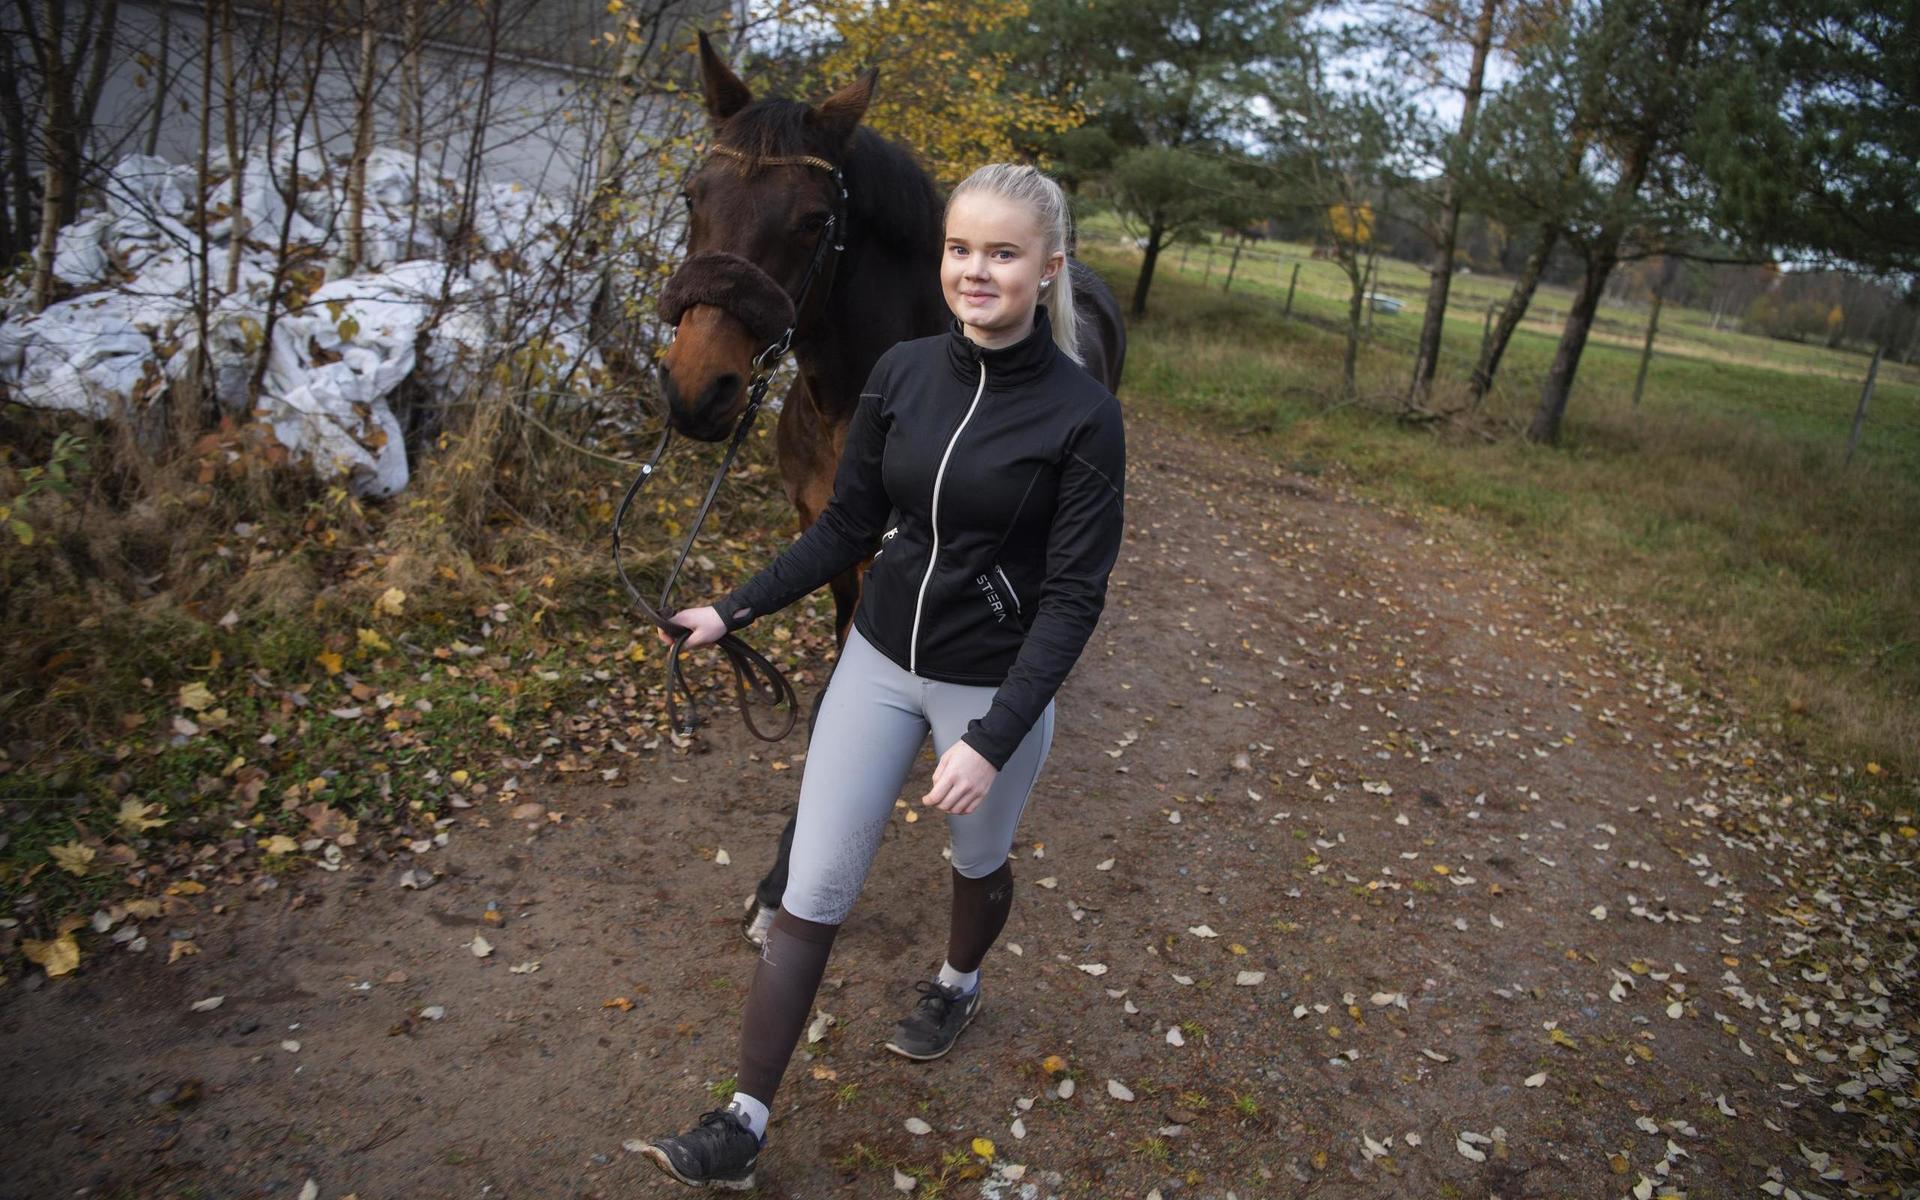 Hoppryttaren Emmie Bengtsson från Knäred har återförenats med hästen Poetic’s Cherry Pie efter trafikolyckan som gav henne tredje gradens brännskador och ledde till två månaders besöksförbud i stallet.